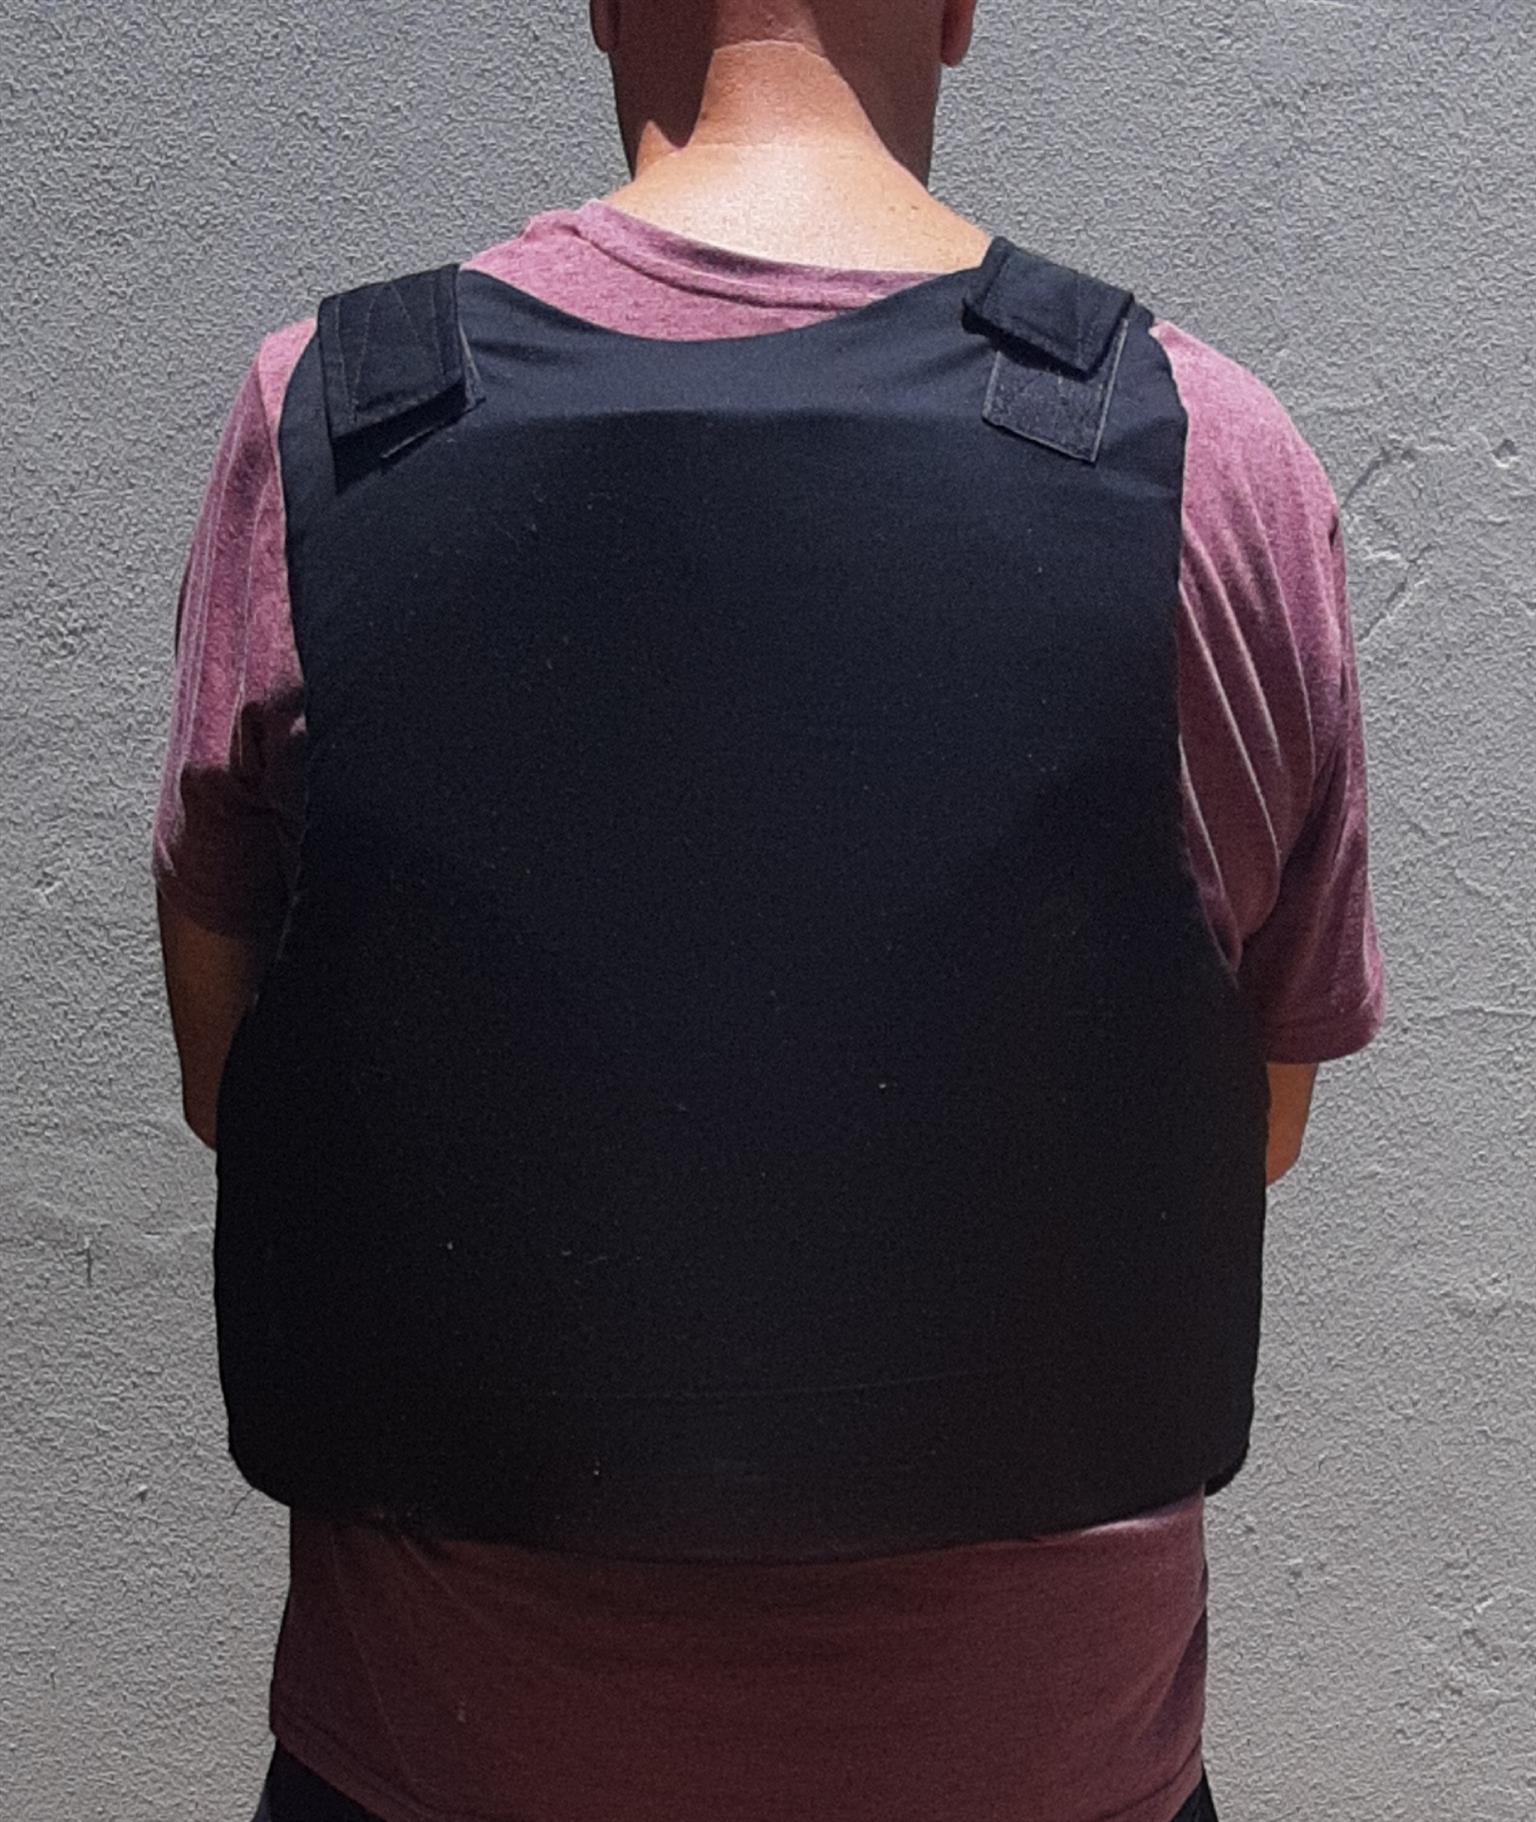 Hidden bullet/stab proof vest